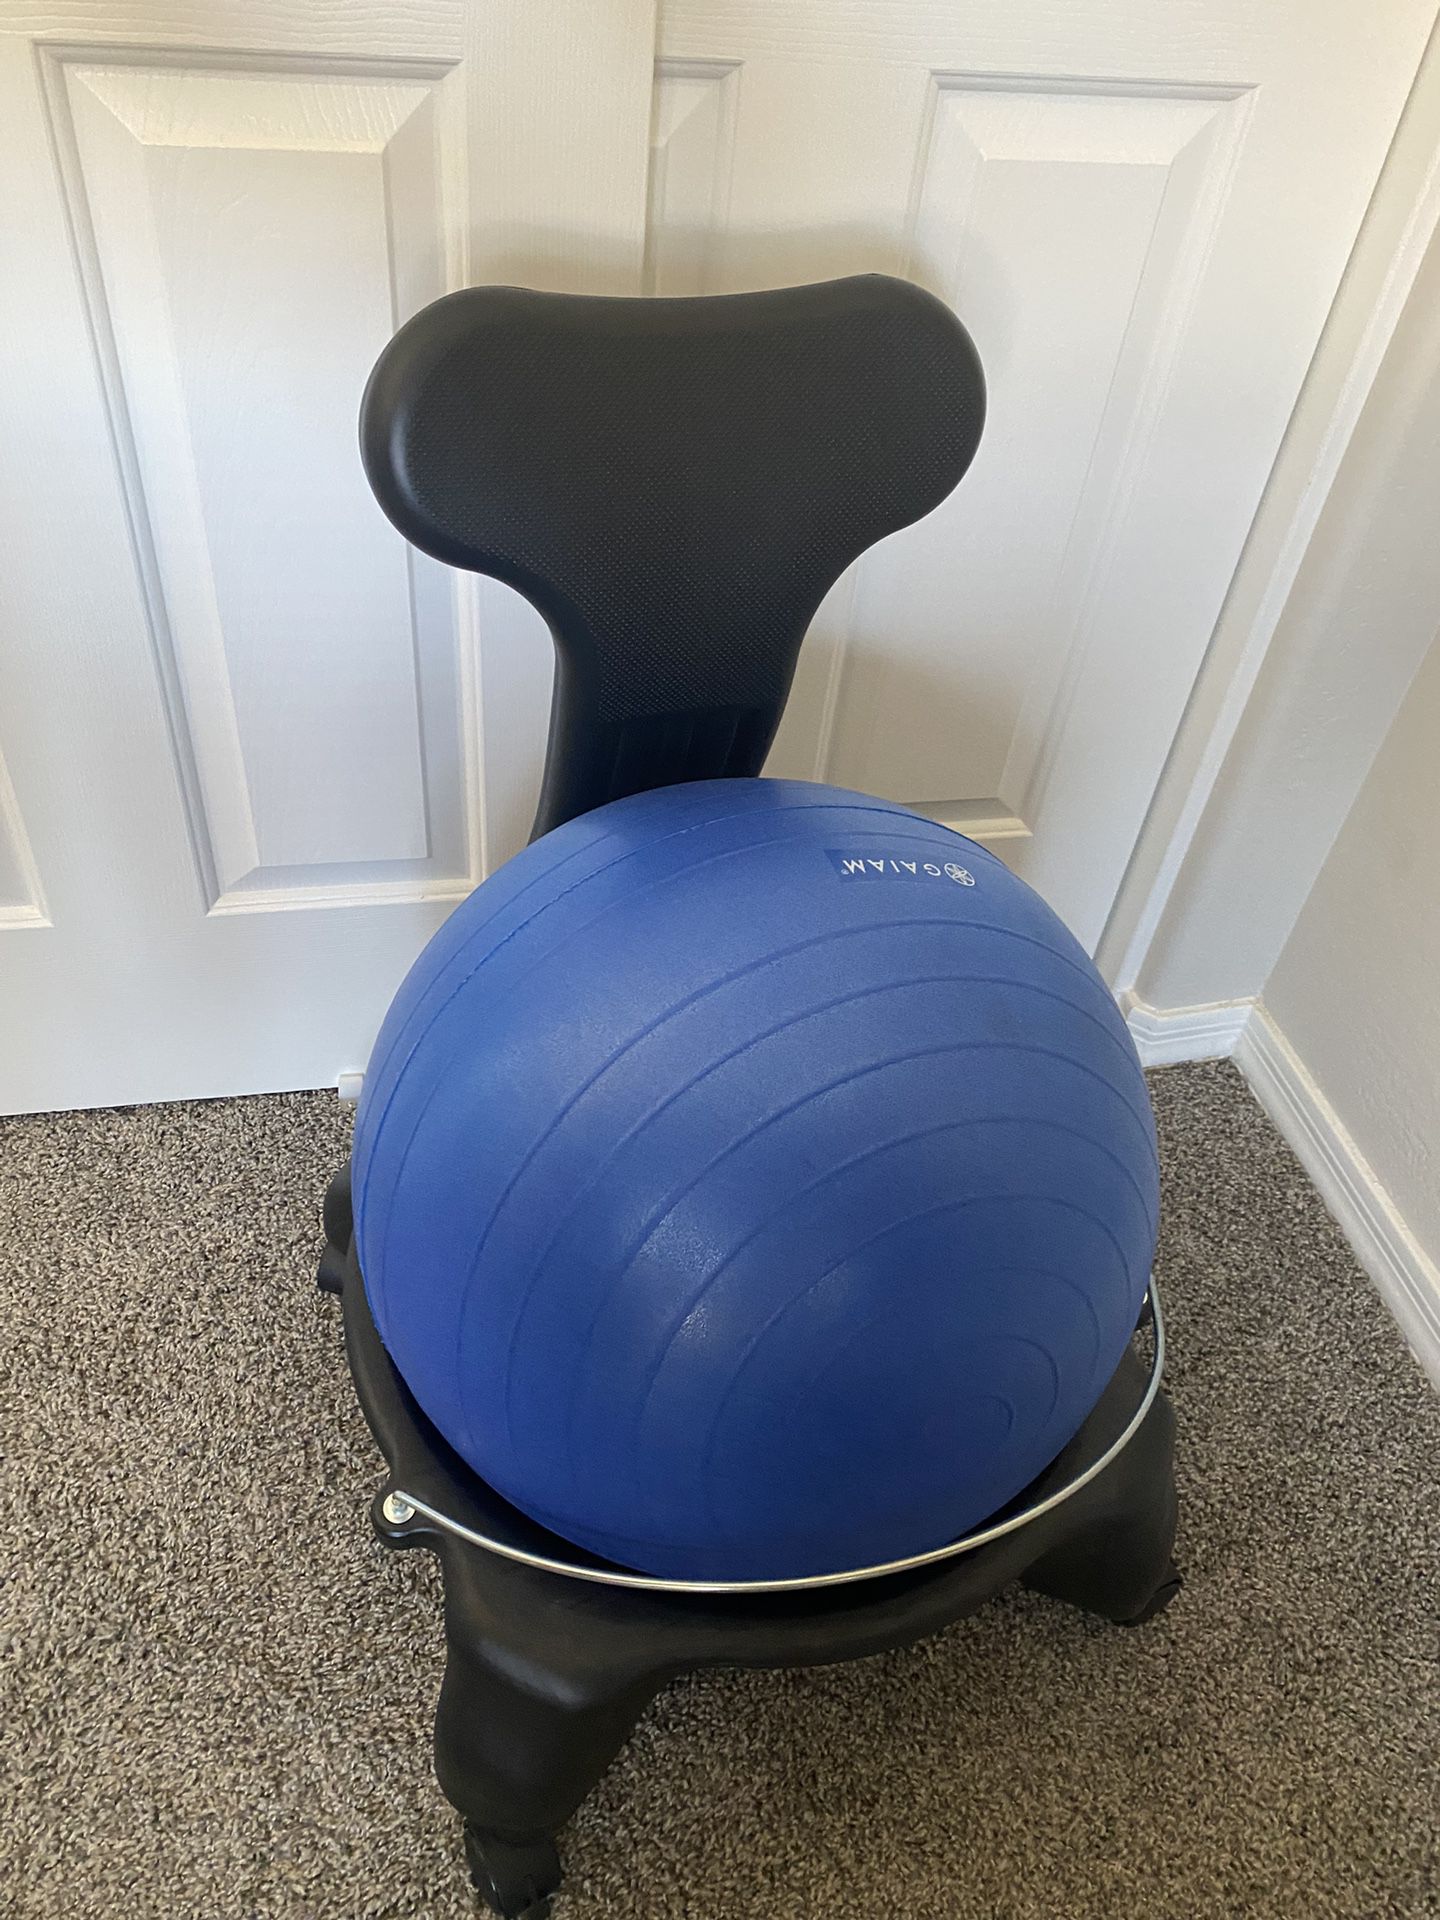 Gaiam Exercise Ball Desk Chair